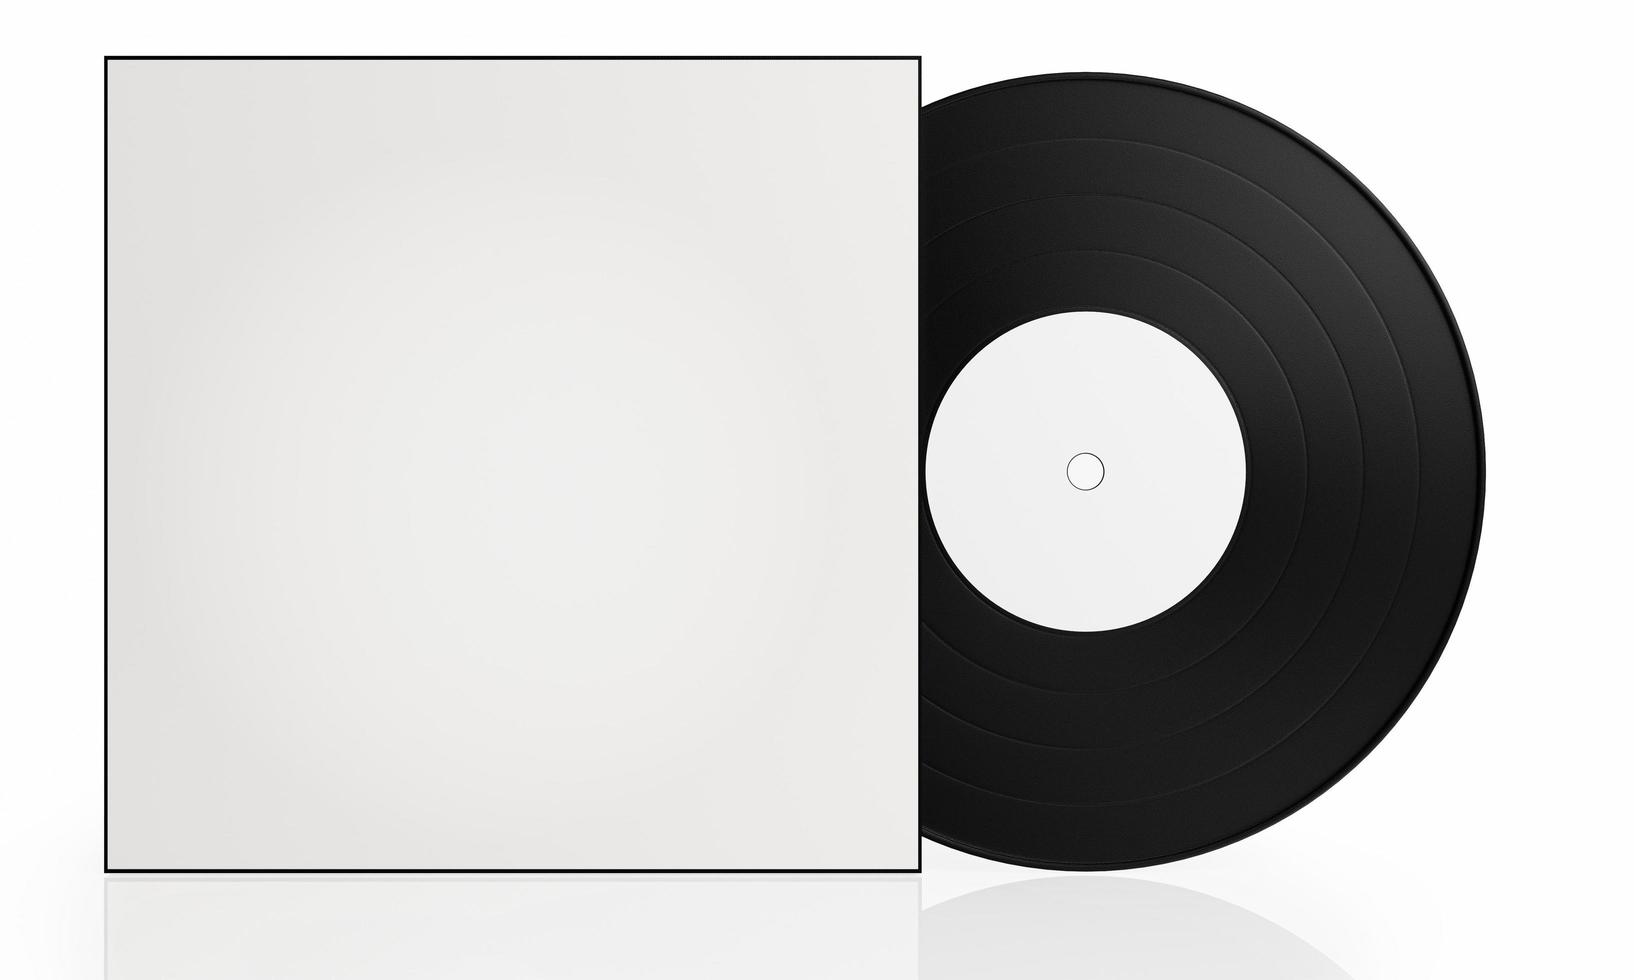 disco in vinile nero bianco copertina bianca su sfondo bianco c'è un riflesso a terra. un dispositivo per la riproduzione di musica nei tempi antichi. rendering 3D foto